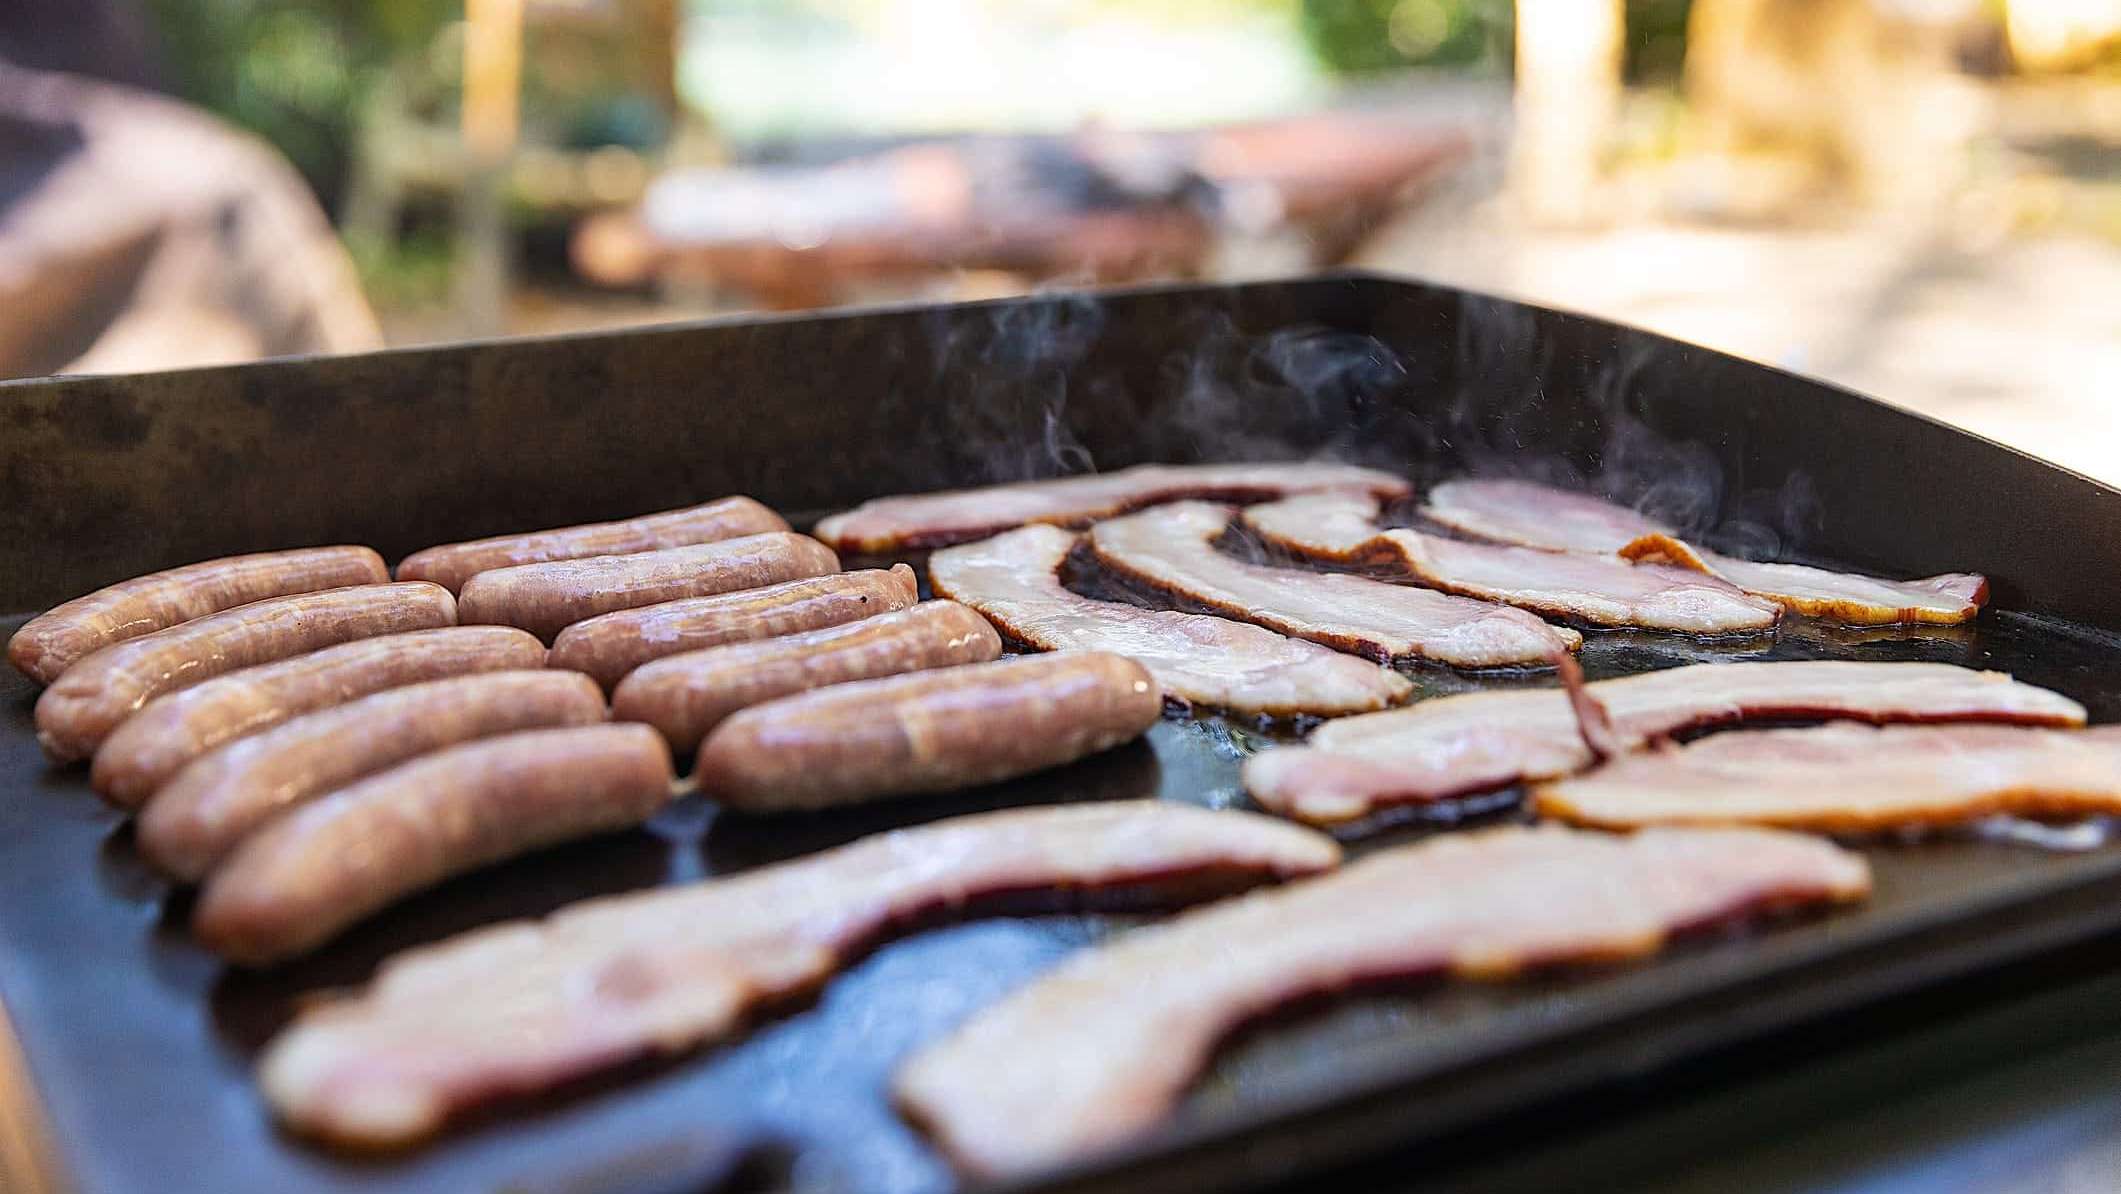 Des tranches de bacon et des saucisses cuisent sur une plancha BBQ